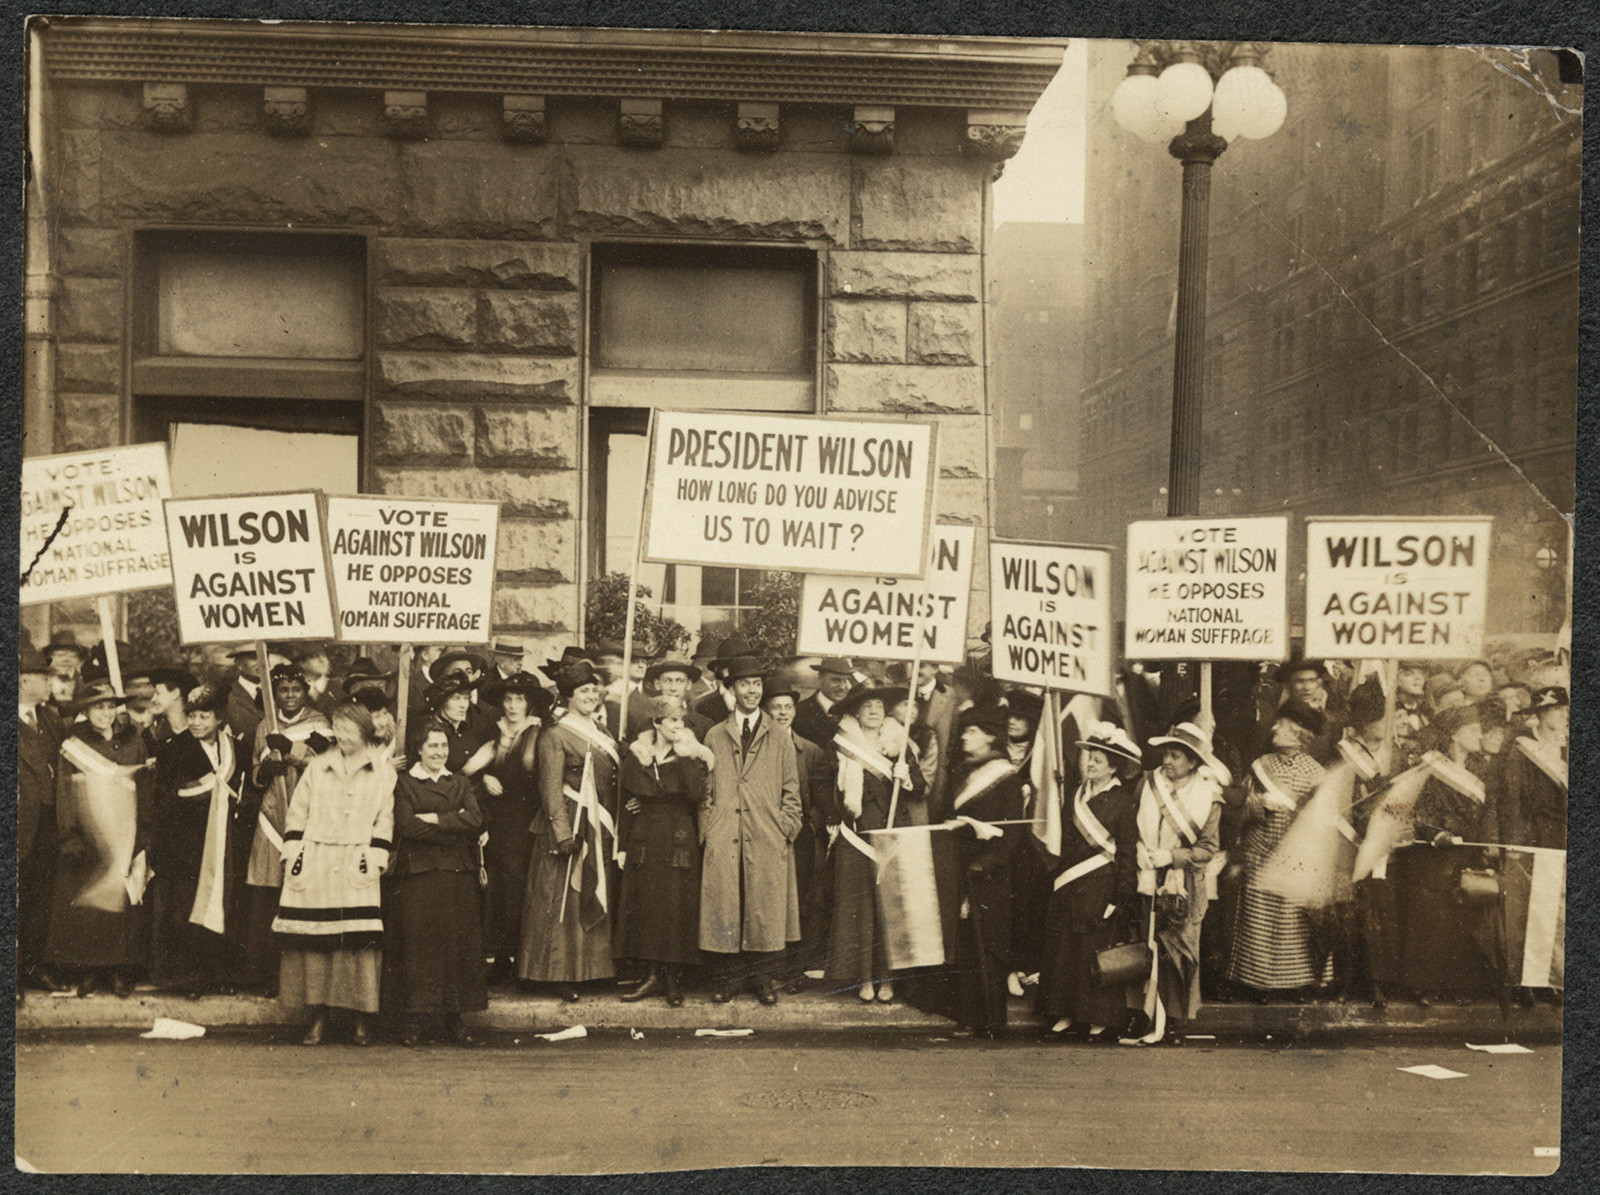 Oktober 1916. In Chincago demonstieren Frauen gegen Präsident Woodrow Wilson. Aufgebrachte Männer greifen die Demonstrantinnen an und entreissen ihnen ihre Banner. Die Polizei schaut lachend zu.